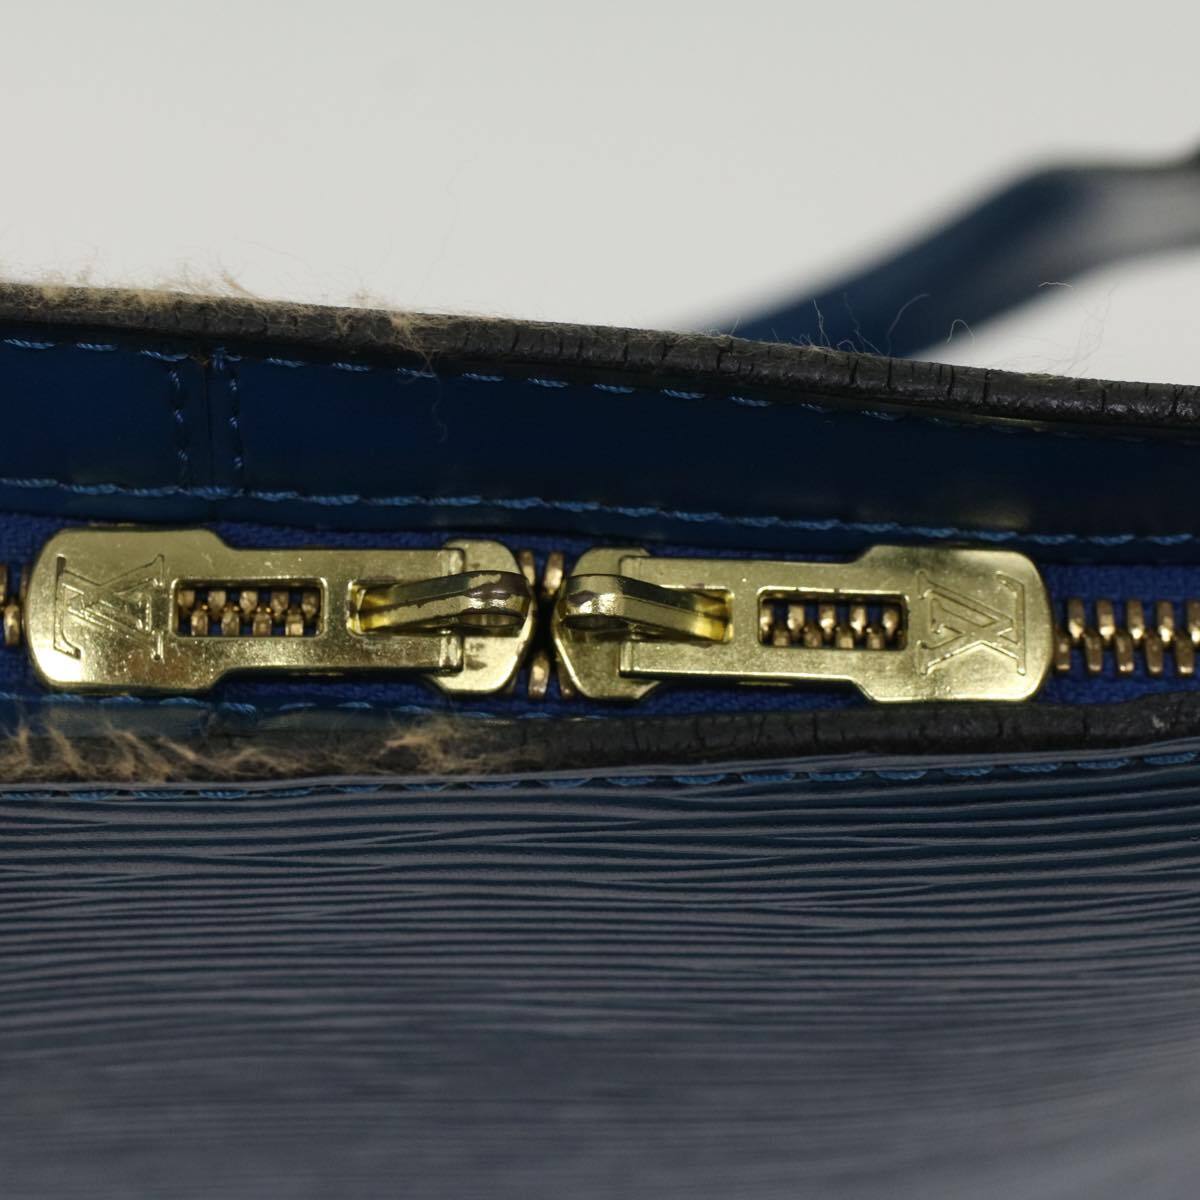 Louis Vuitton Lussac Tote in Epi Leather Luxury Designer Bag